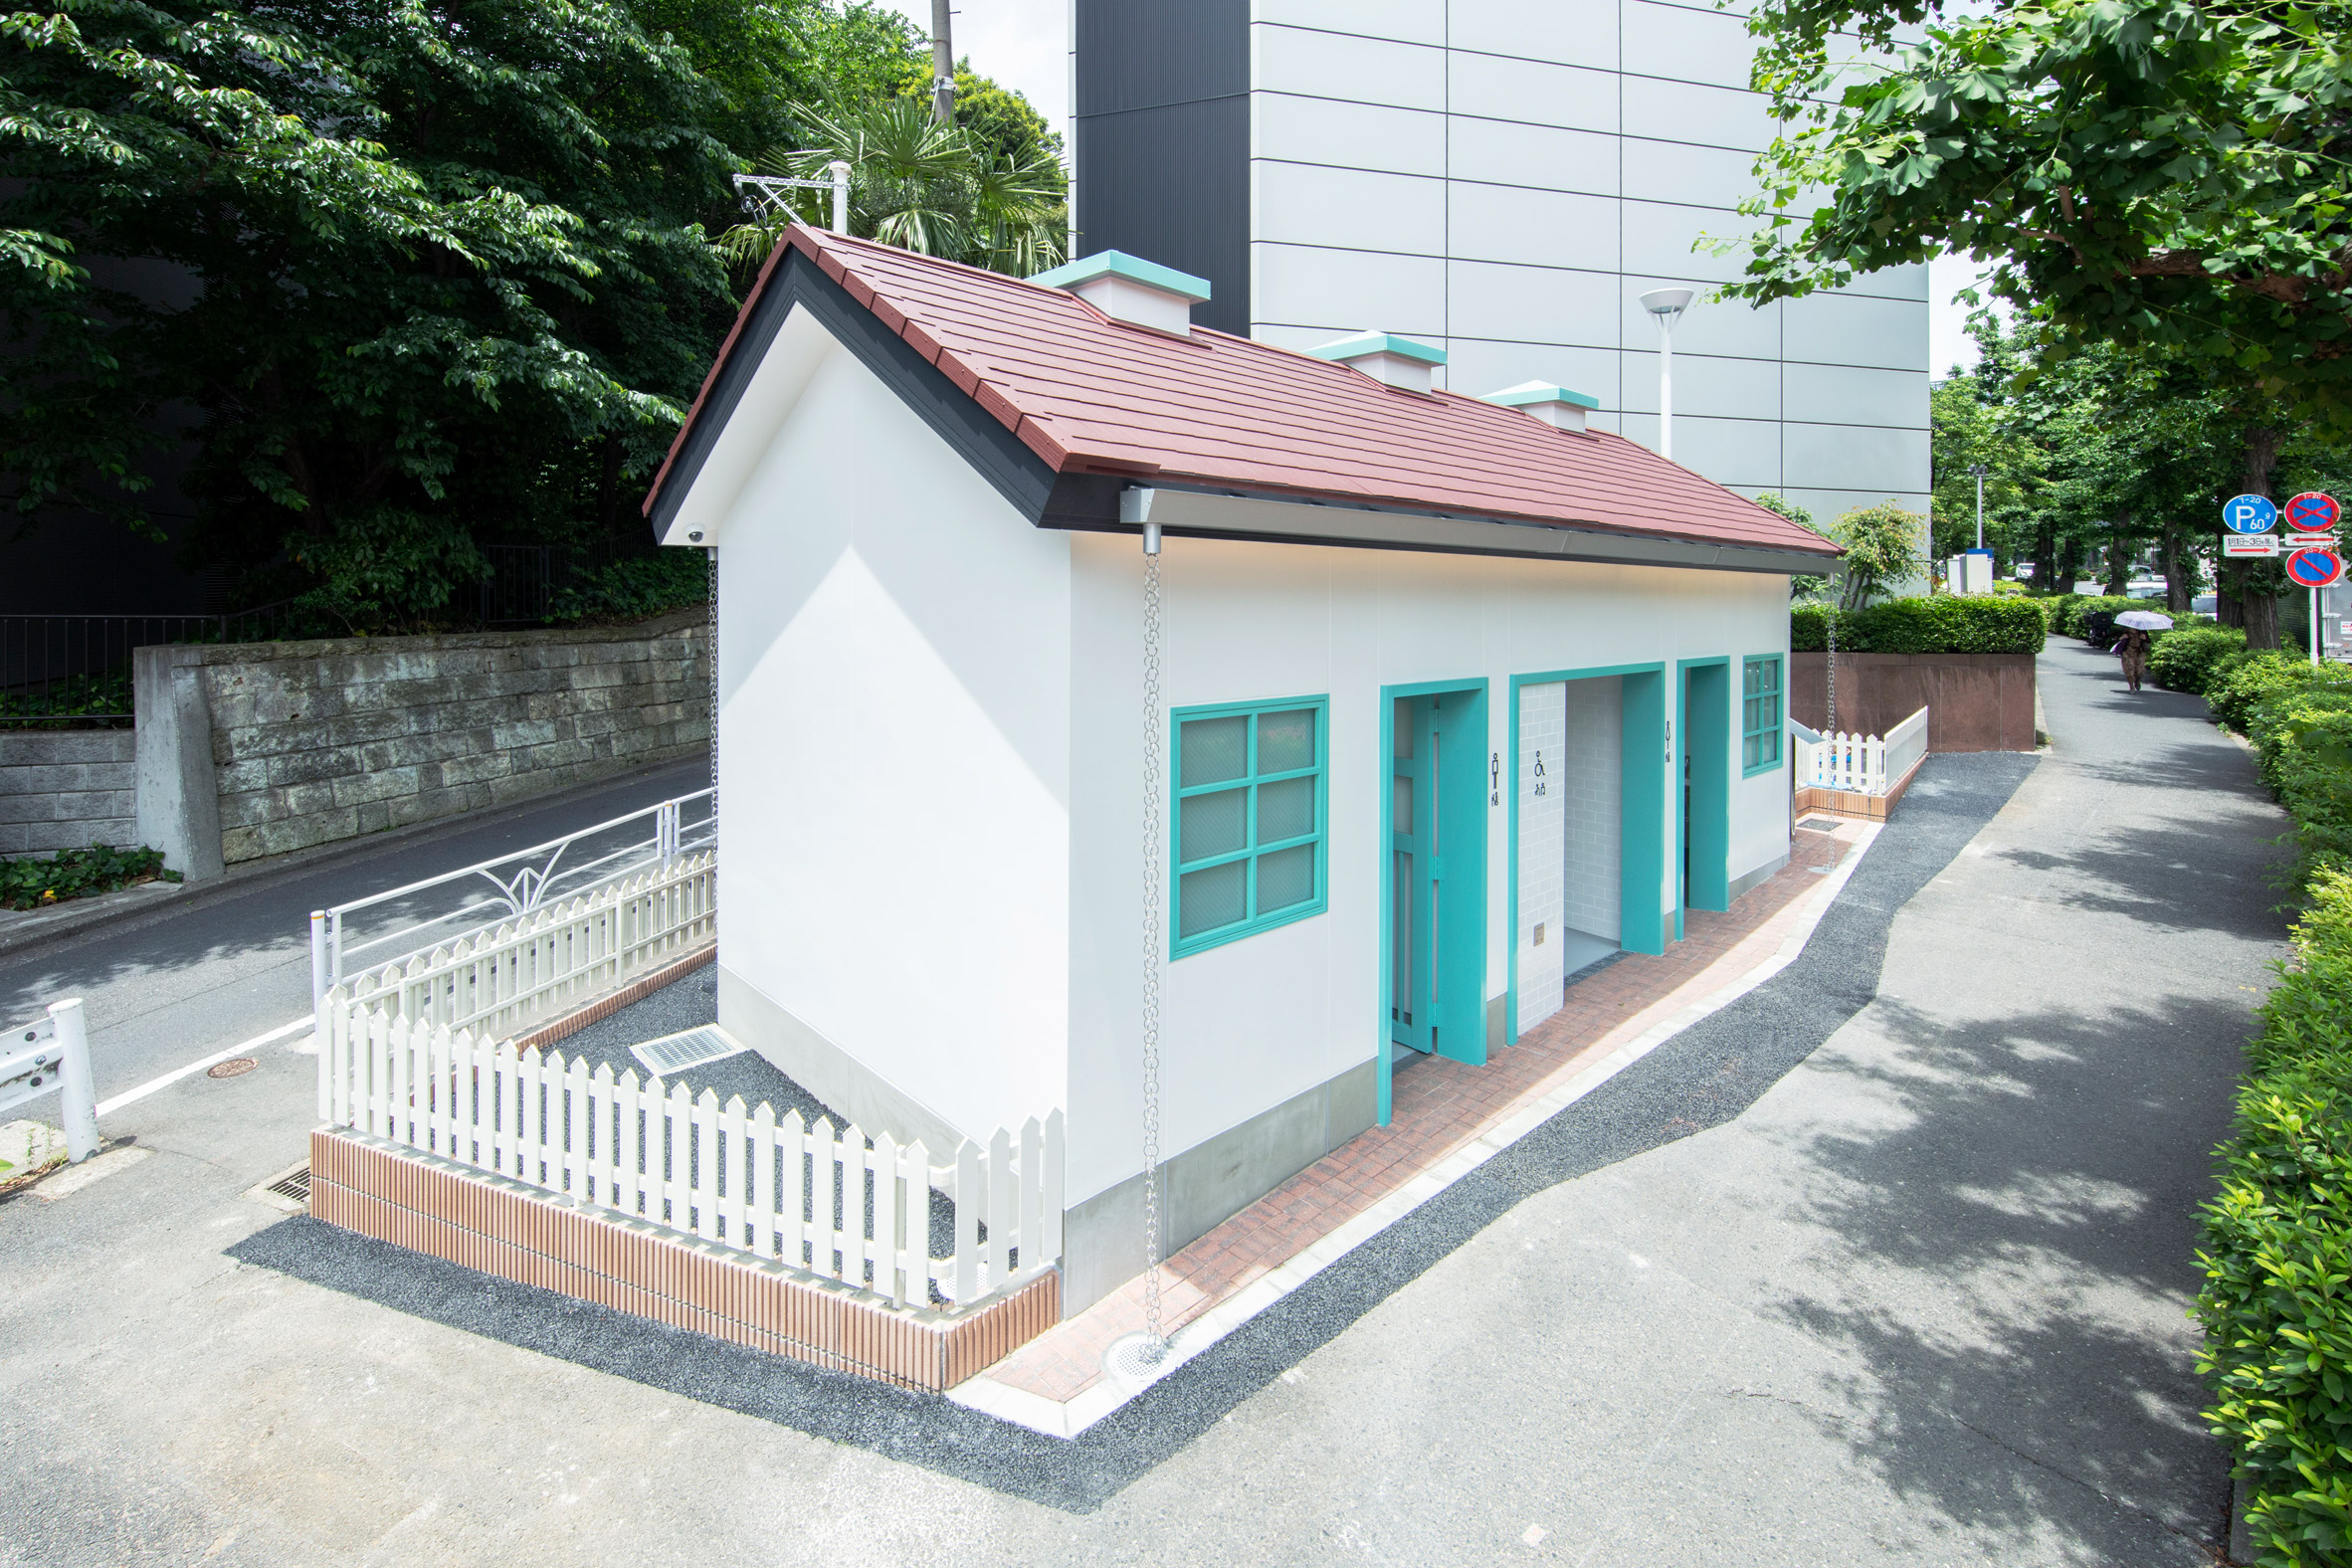 AVNT on Instagram: Photos of NIGO's former “BAPE House” in Tokyo